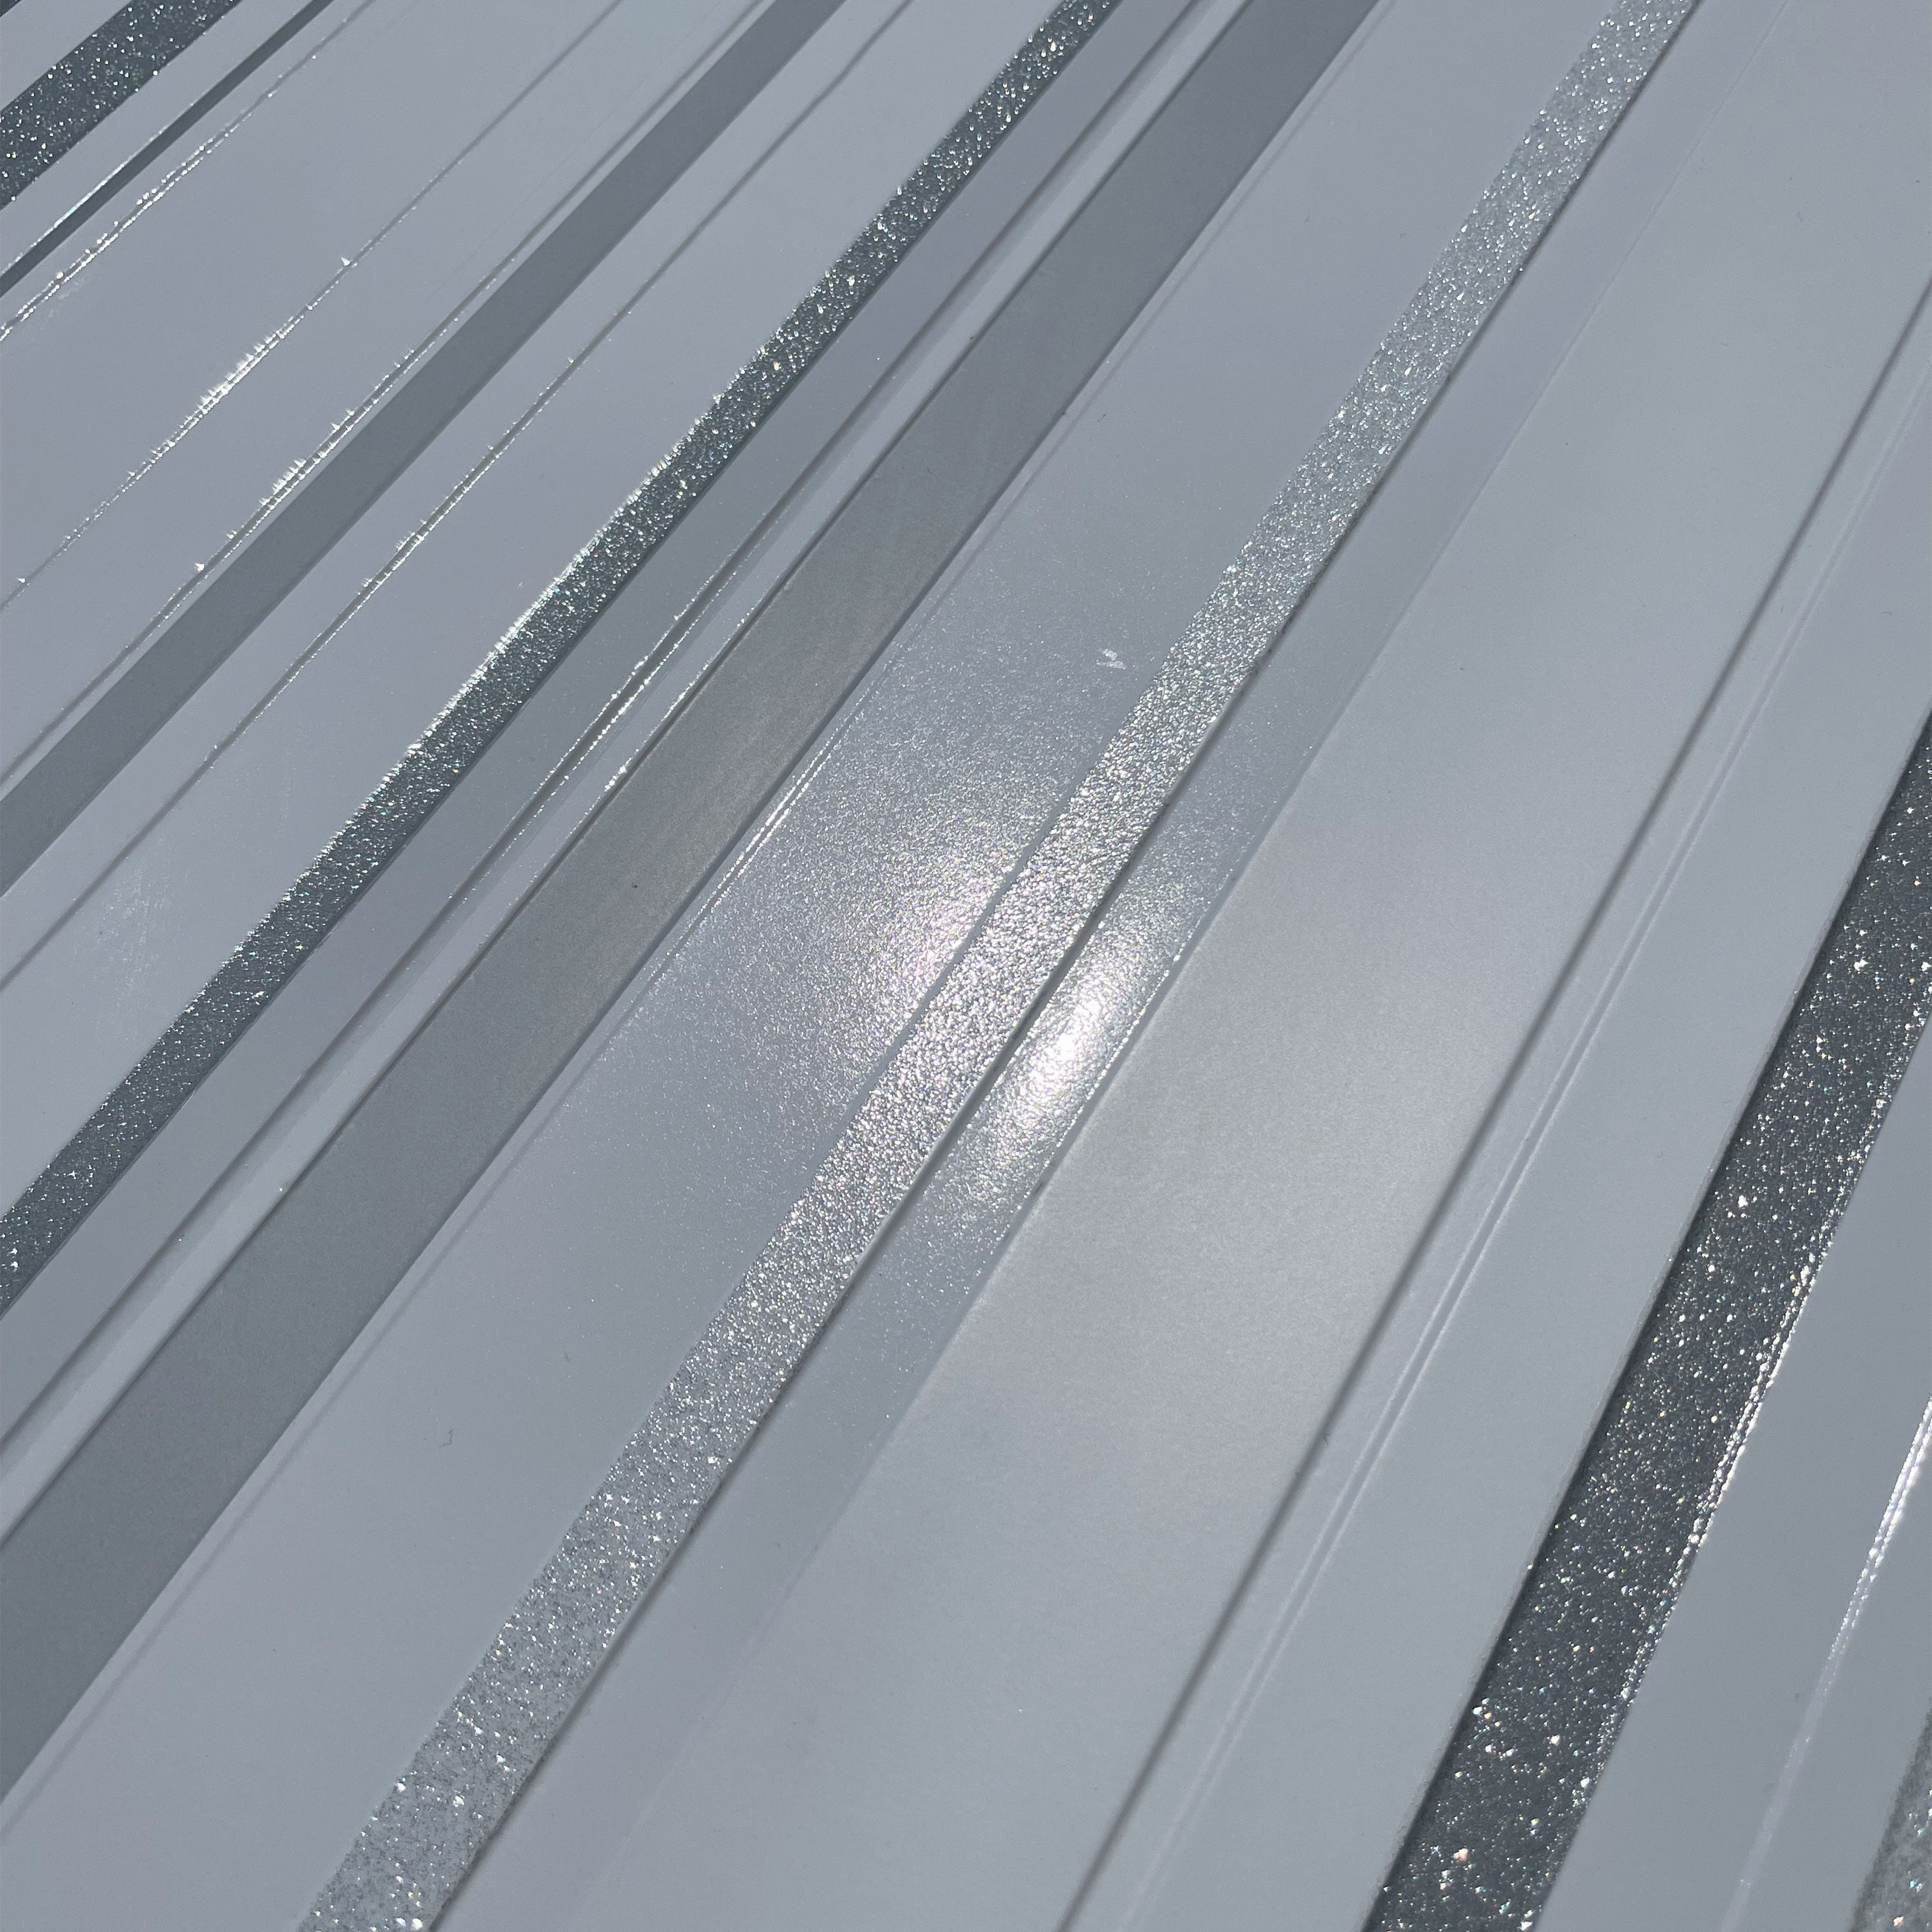 MAXI Pannelli 3D HI-RES Rivestimento a parete in PVC - RIGHE GLITTER- Realistici e isolanti. - Eternal Parquet